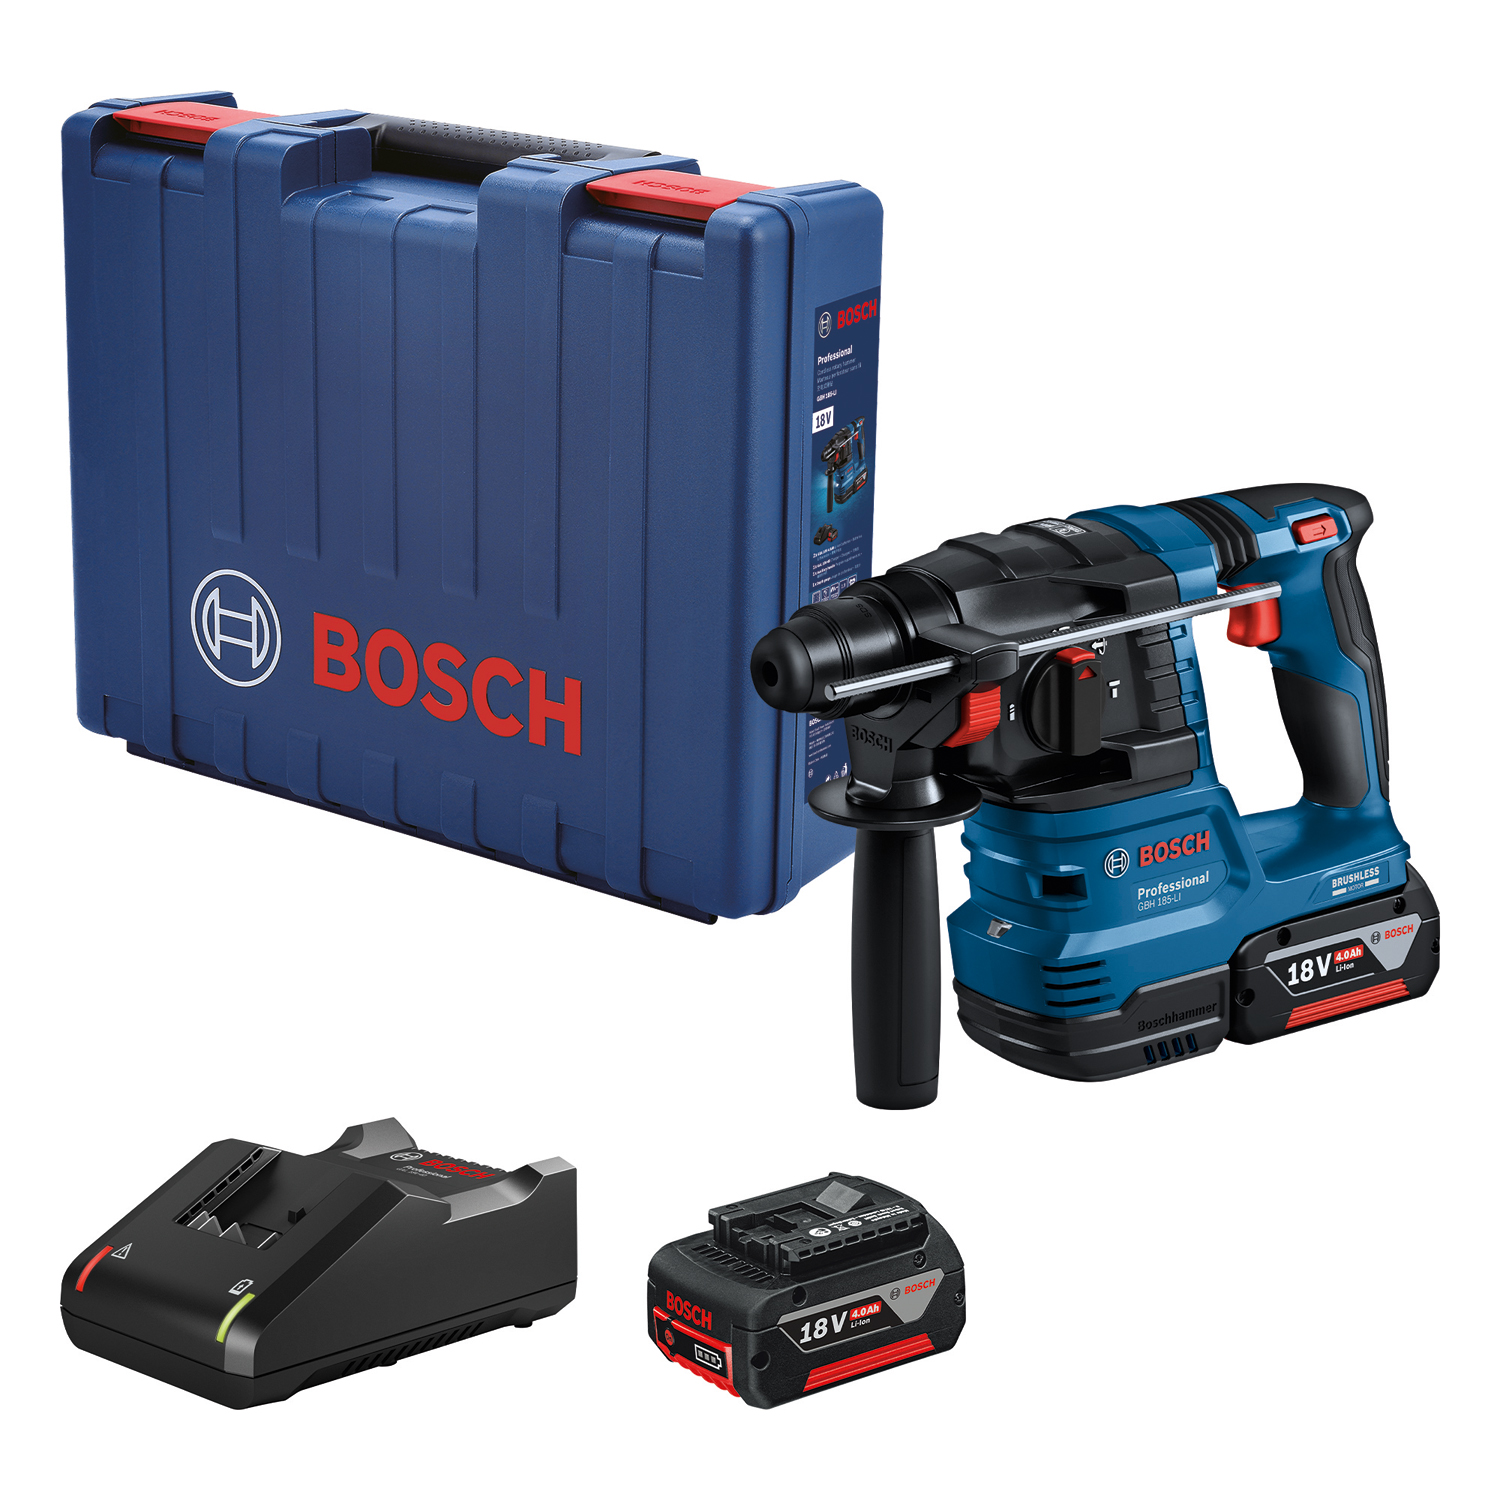 Bosch GBH 185-LI Ciocan rotopercutor cu acumulator 18 V,  , 2 ac., 4.0 Ah